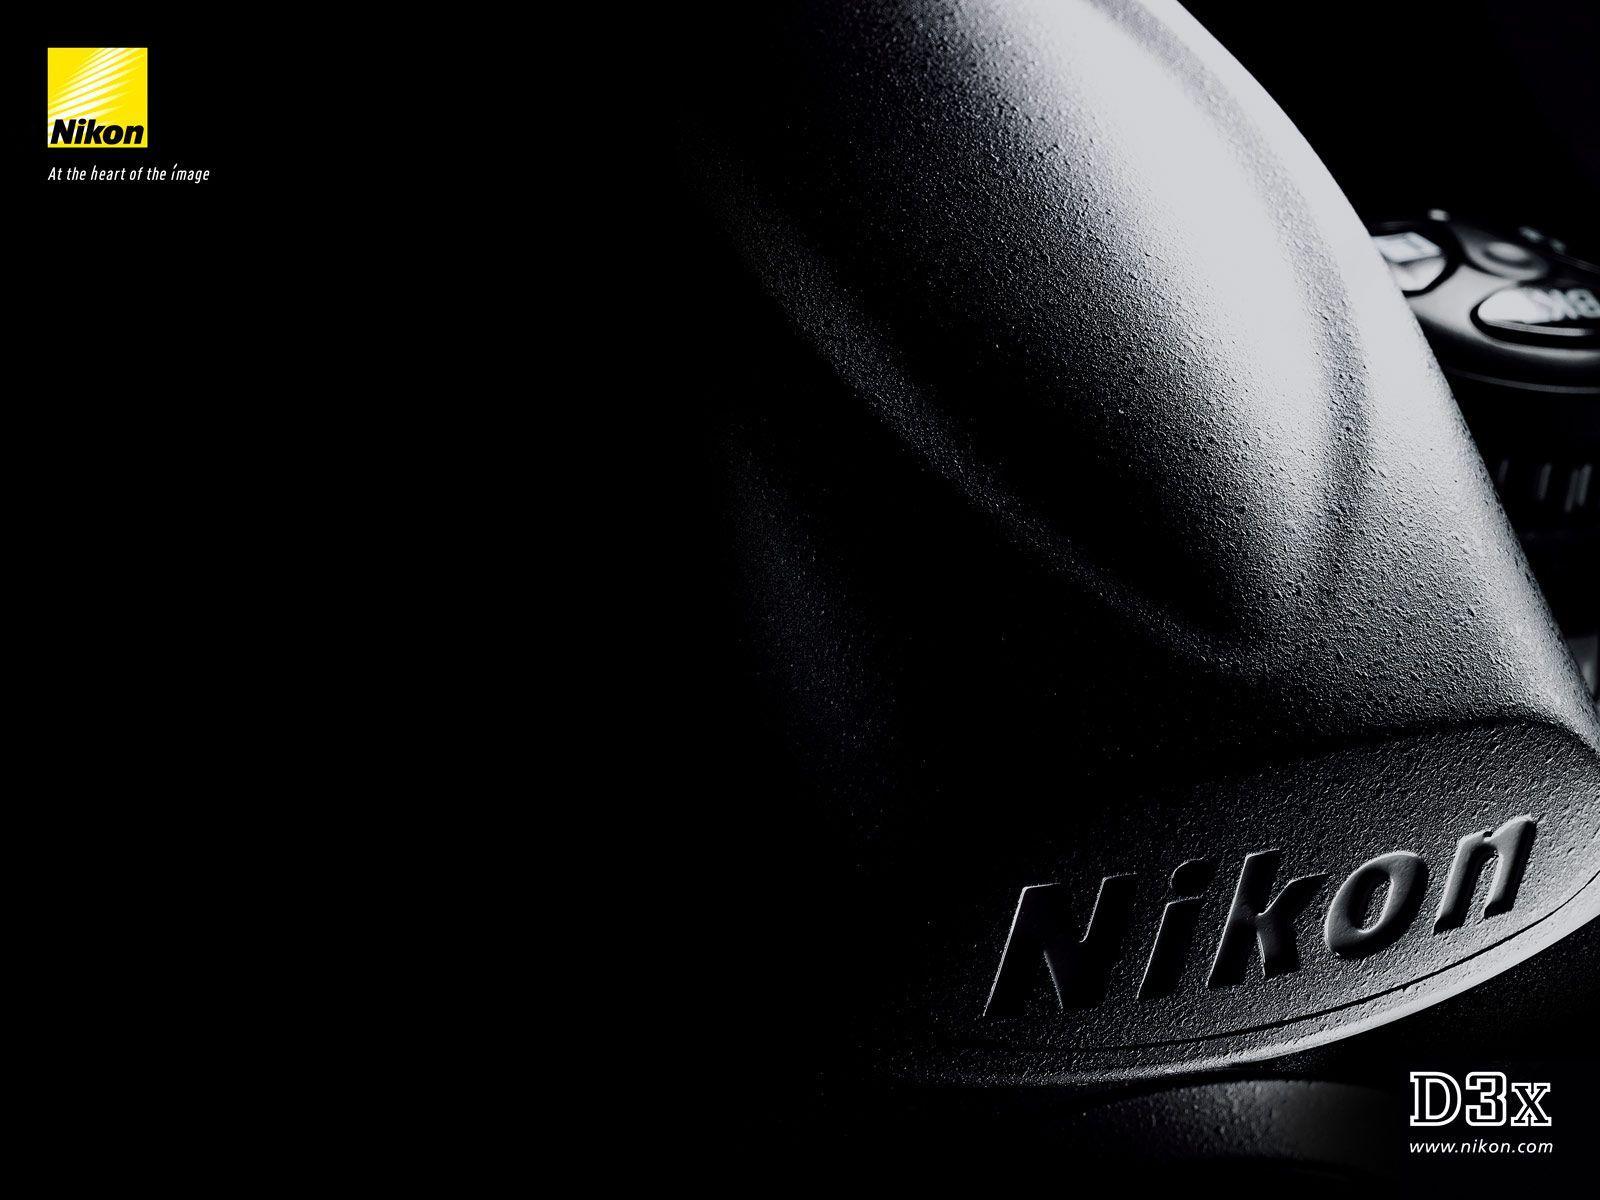 Download D3x Nikon wallpaper HD wallpaper